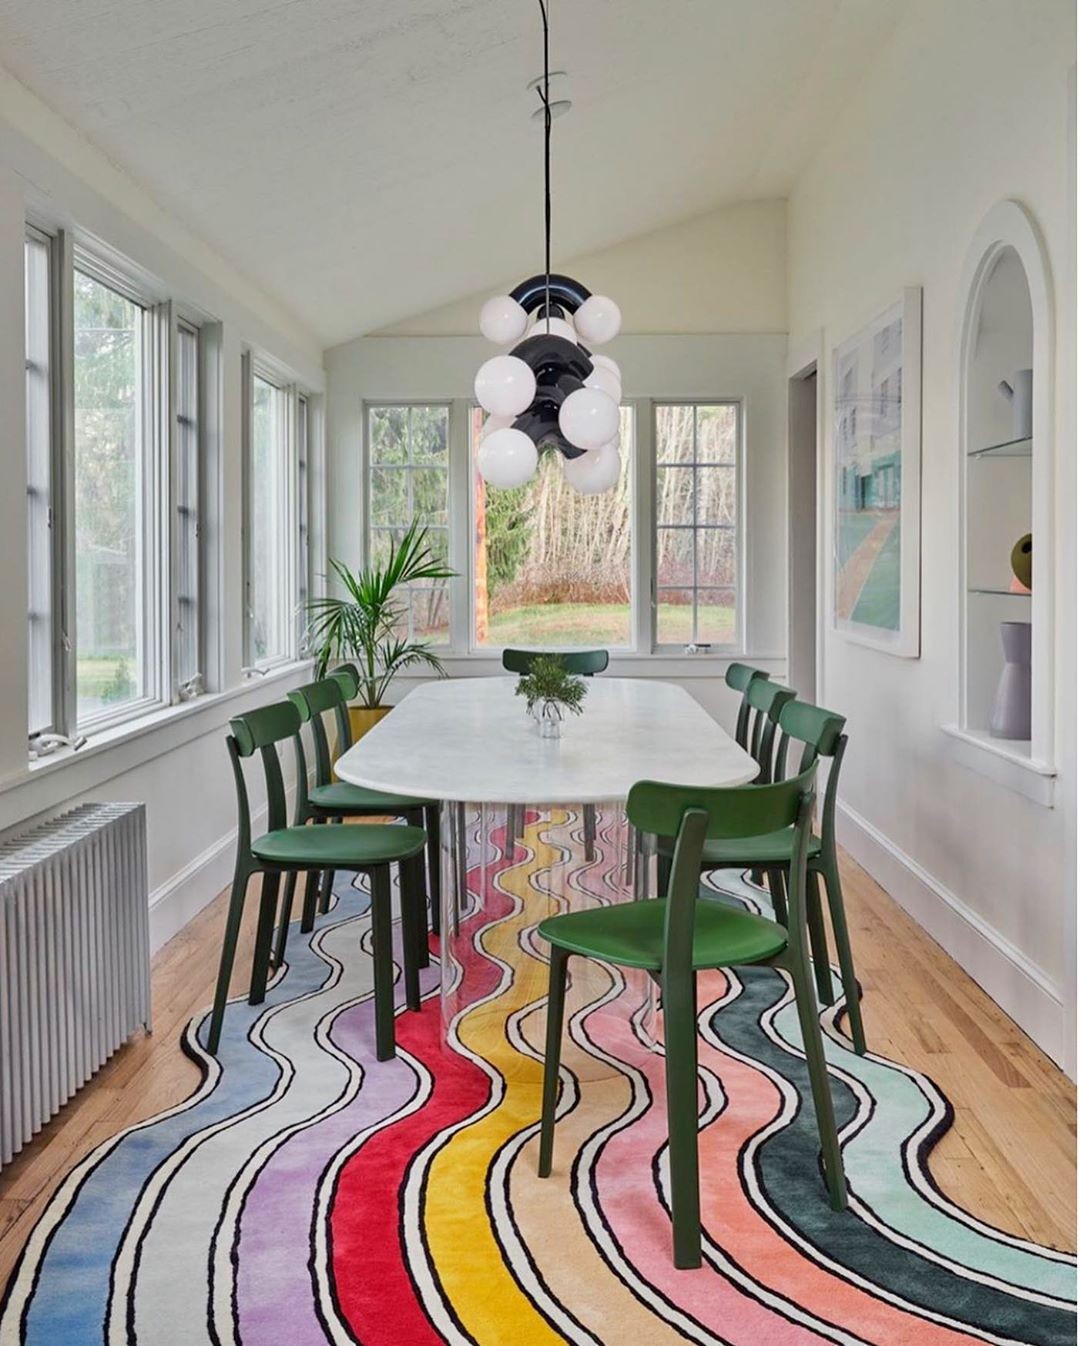 Décor do dia: sala de jantar com tapete multicolorido (Foto: Claire Esparros)